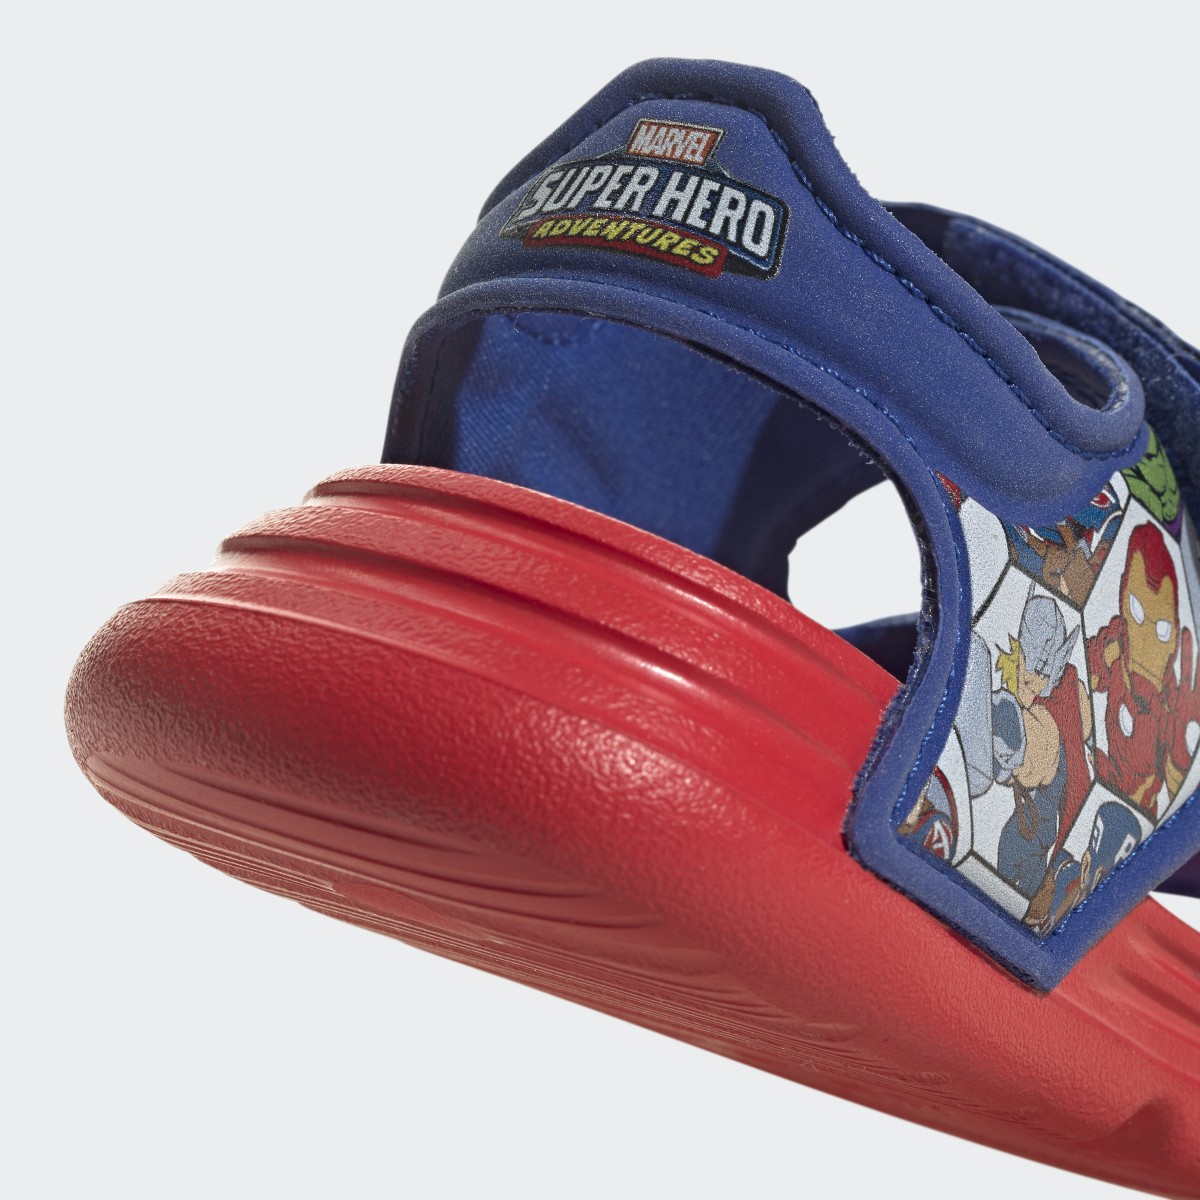 Adidas x Marvel AltaSwim Super Hero Adventures Sandals. 10